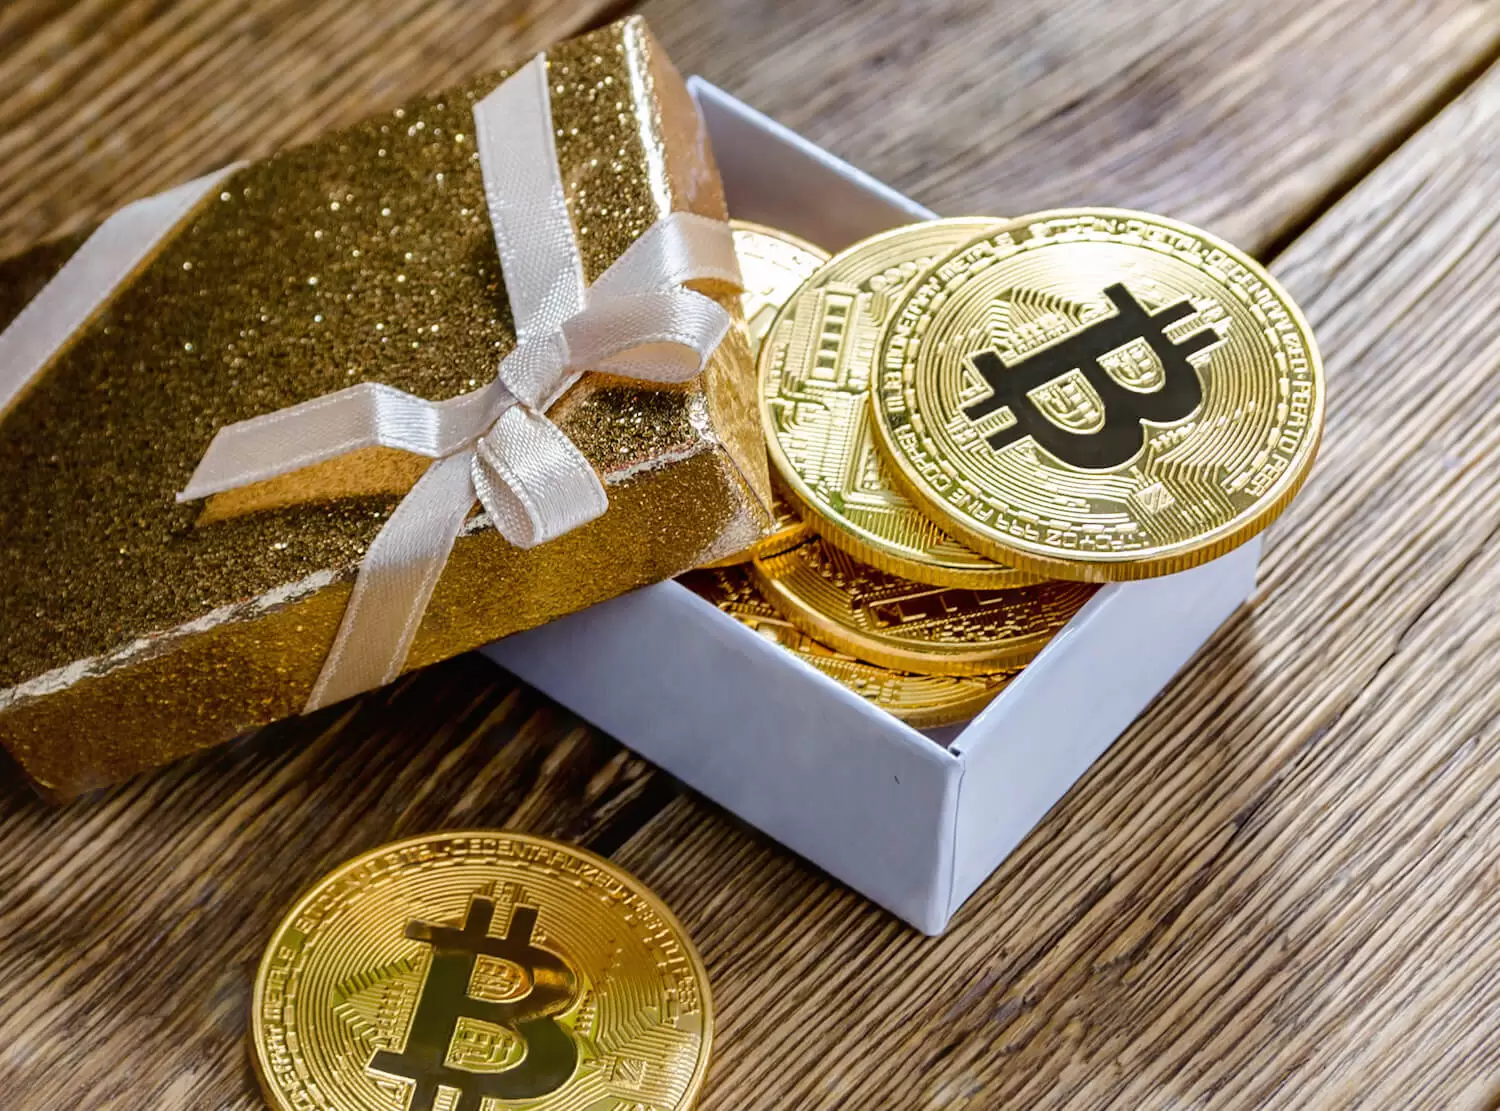 Belediye Başkanı Bedava Bitcoin Dağıtacak! “Zengin Olmak Herkesin Hakkı”